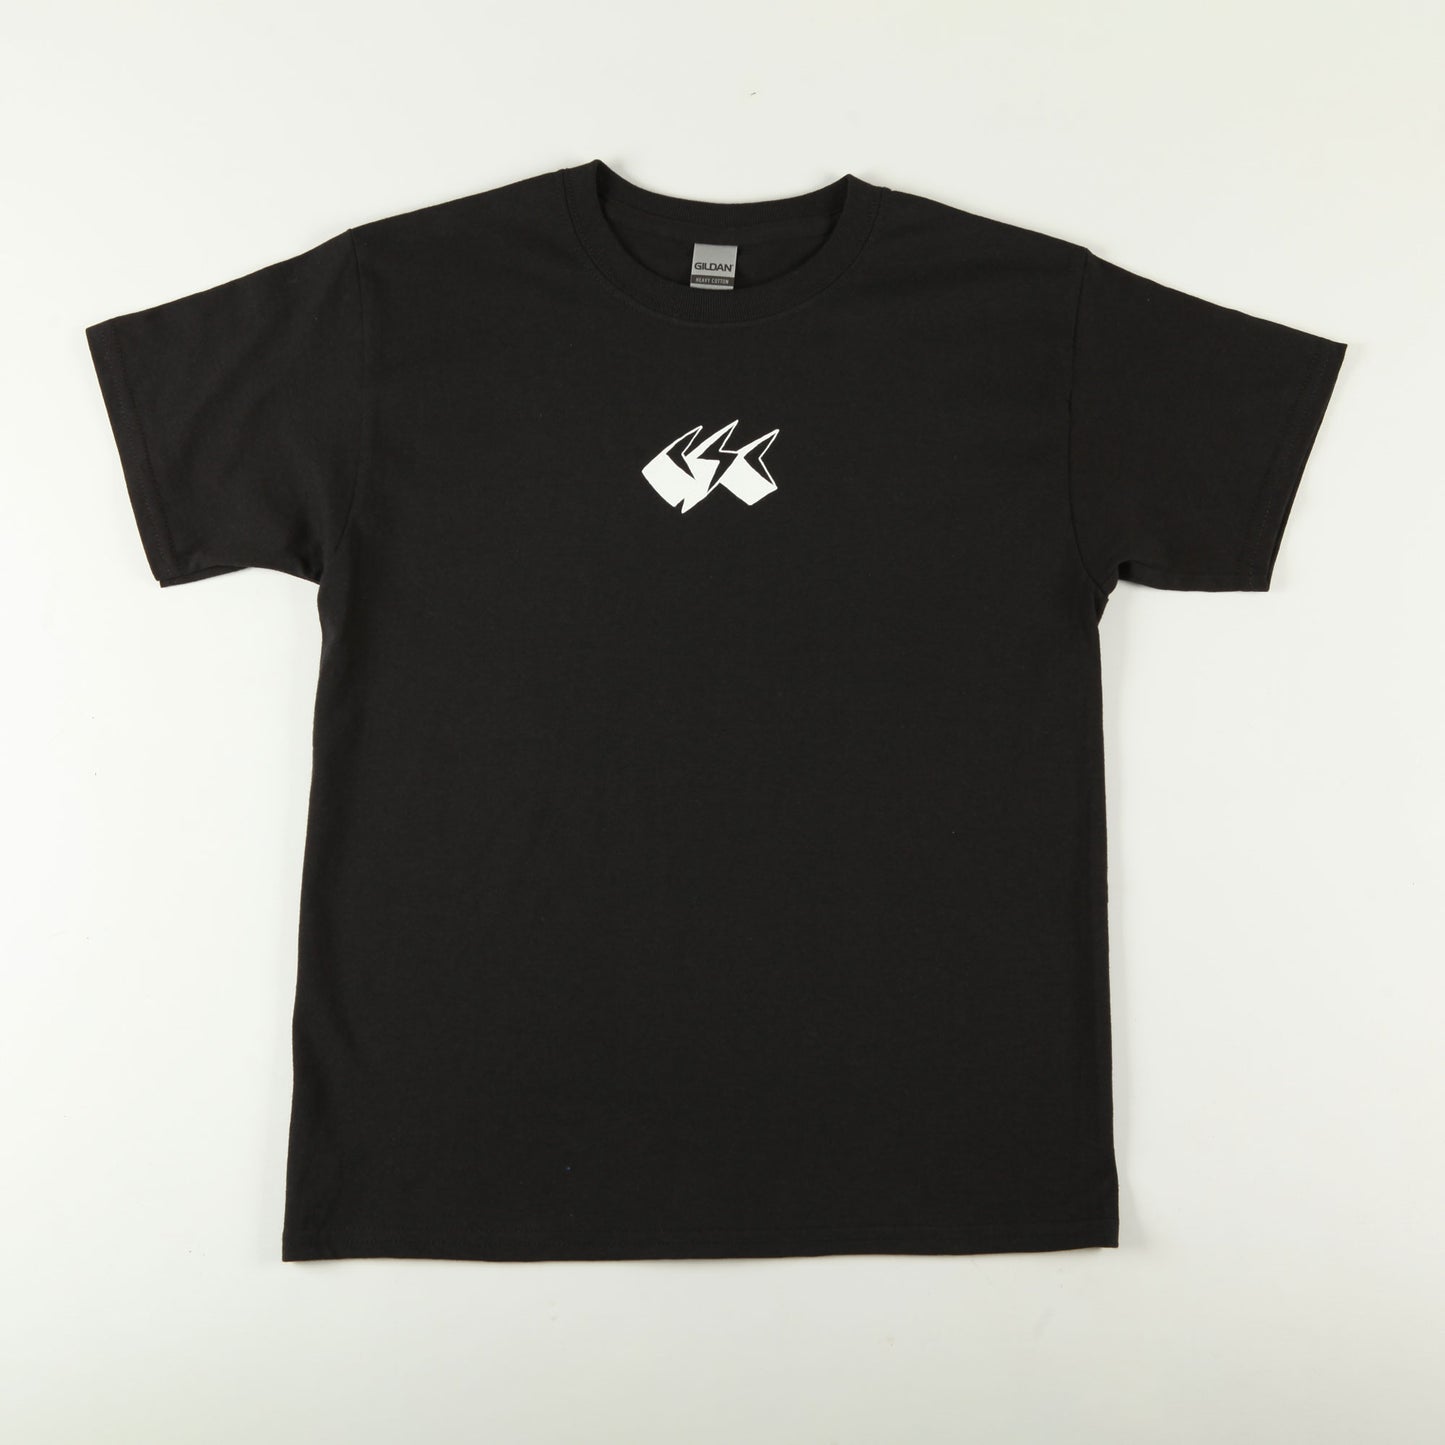 CSC 'Jaggy' Kids T-Shirt (Black)